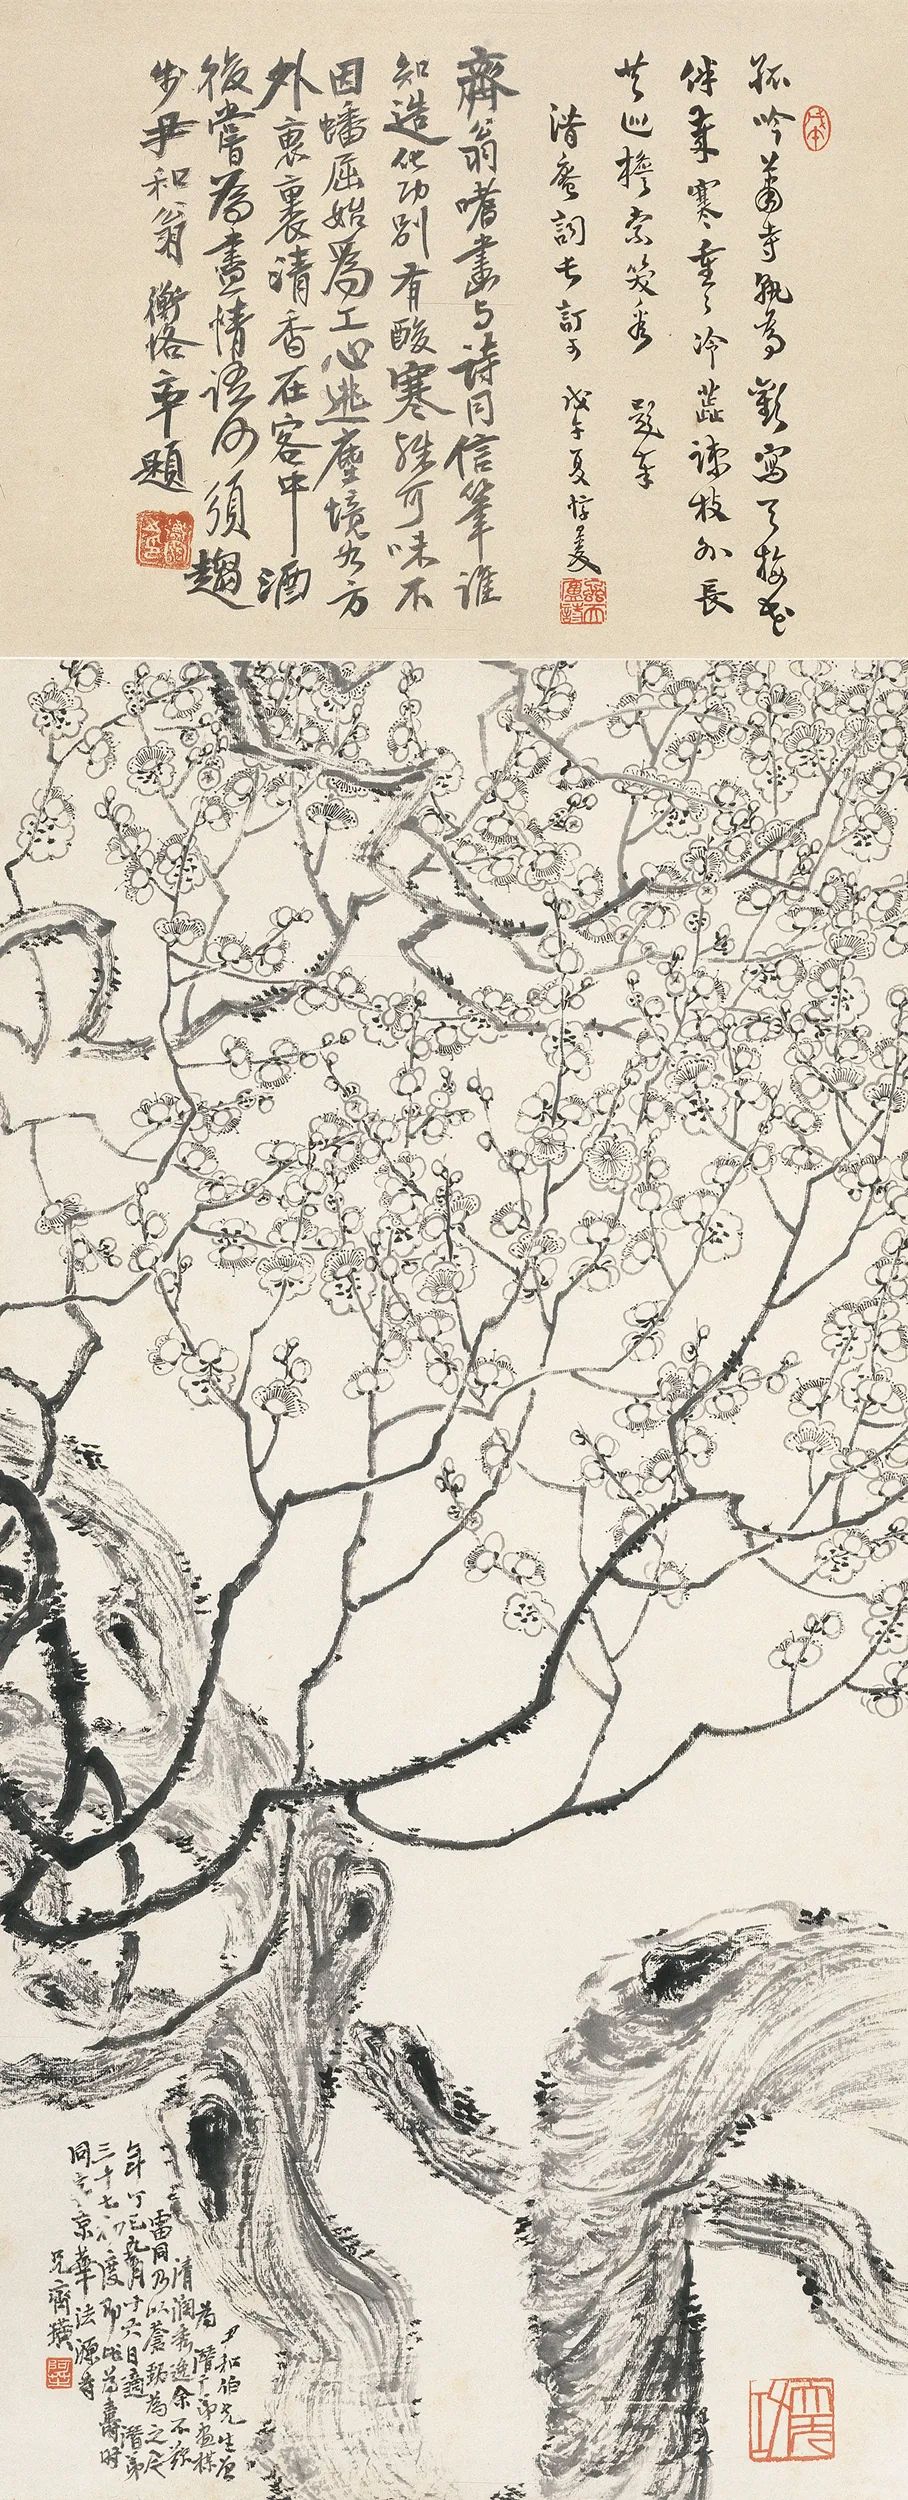 齐白石《墨梅》 1917，纸本墨笔，北京画院藏